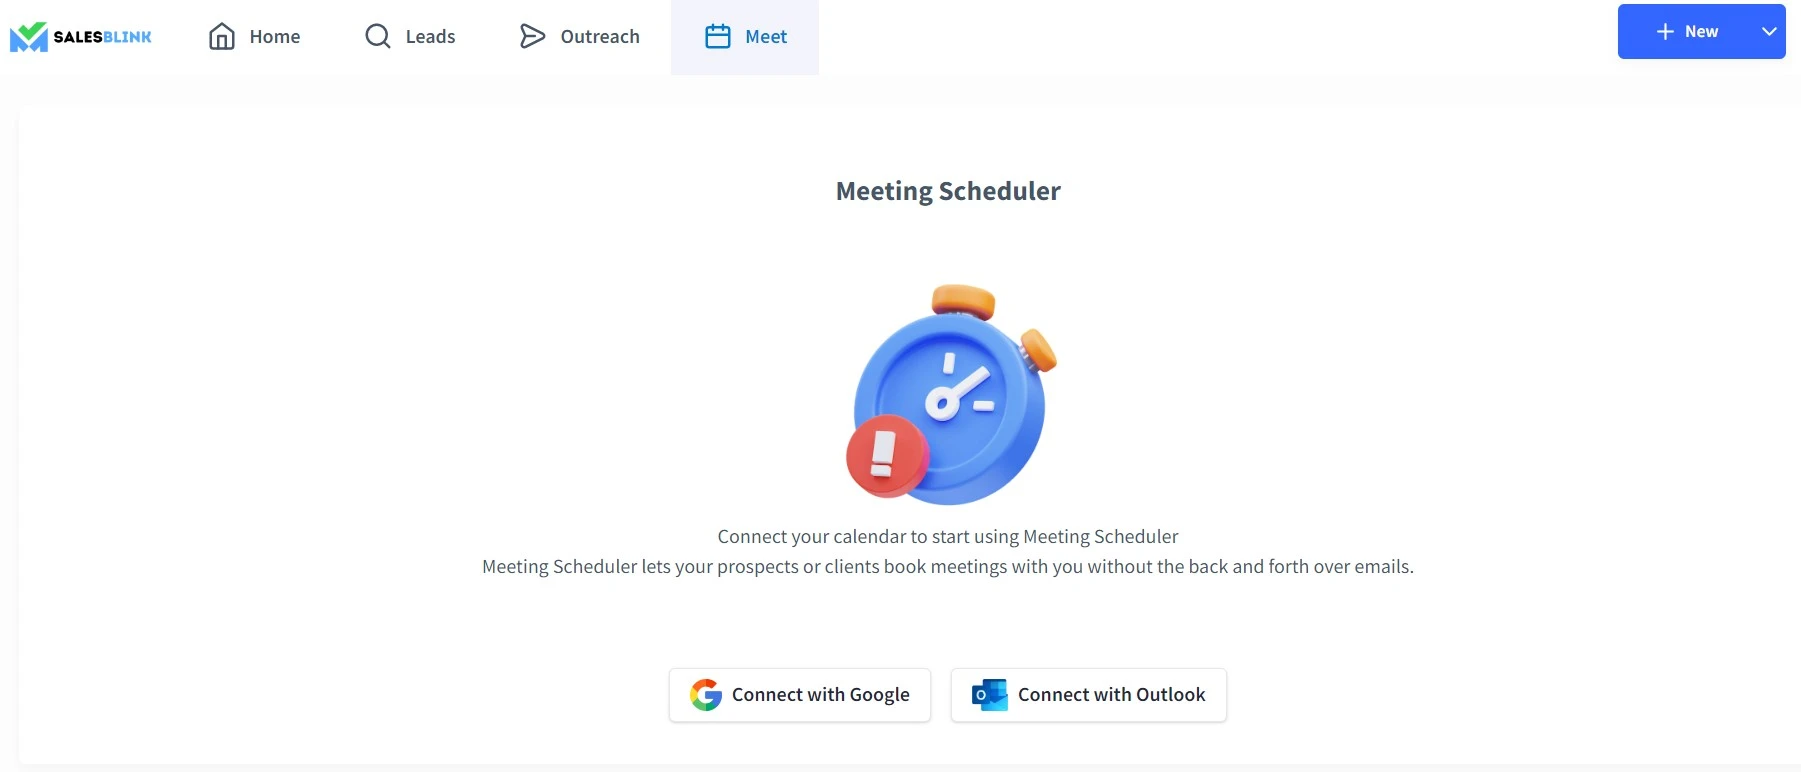 SalesBlink's meeting scheduler